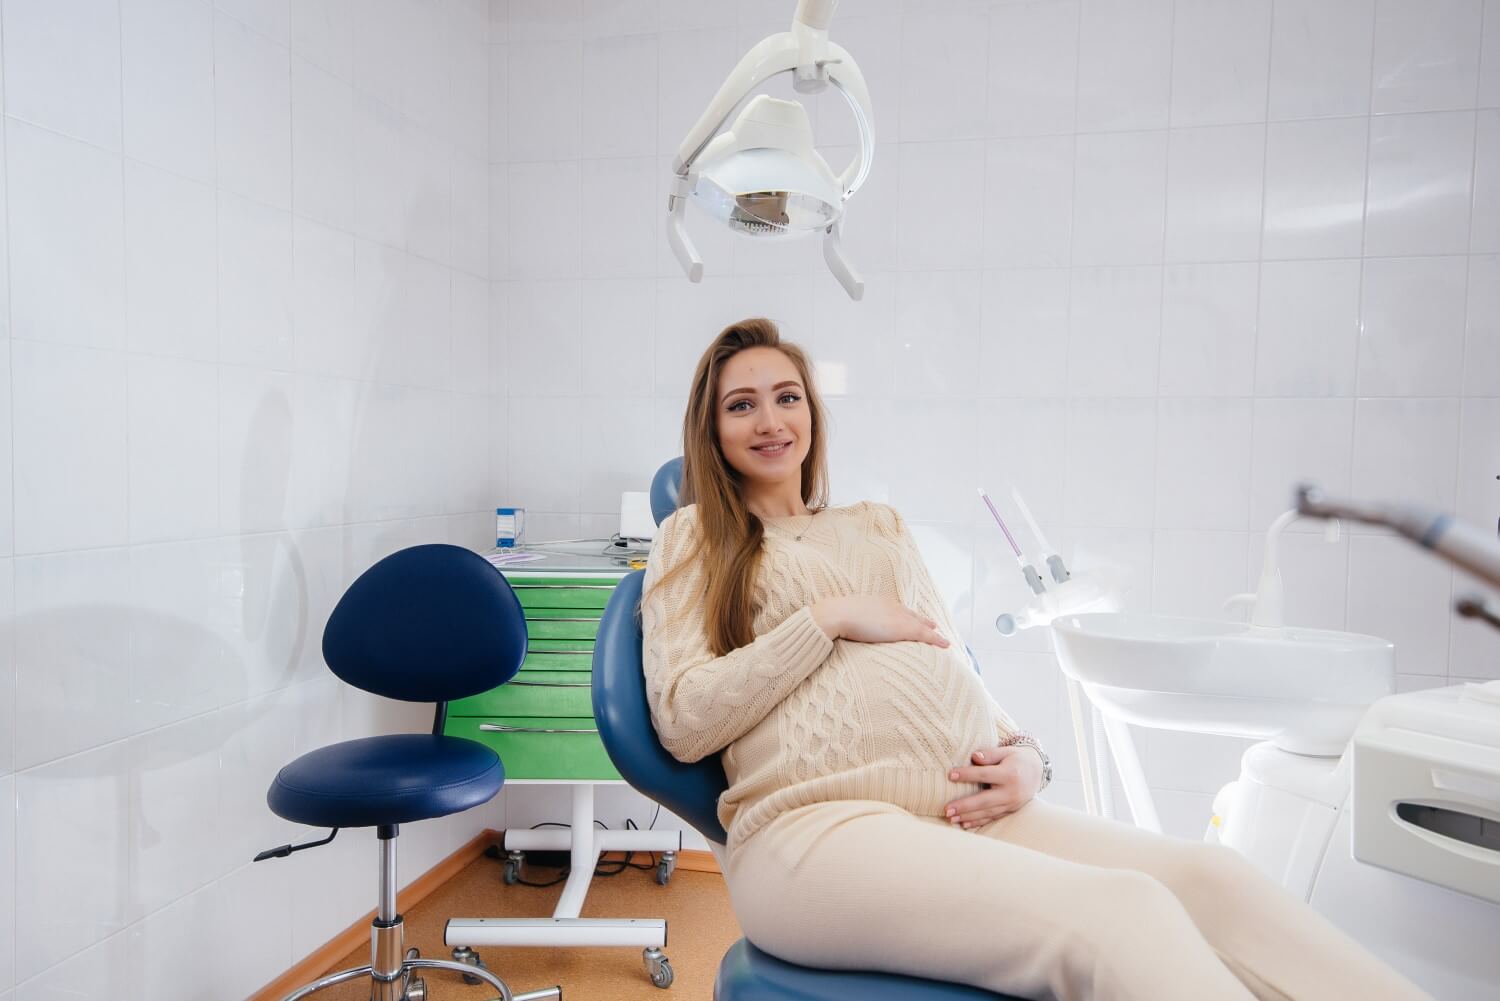 Mulher grávida visitando o consultório de um dentista